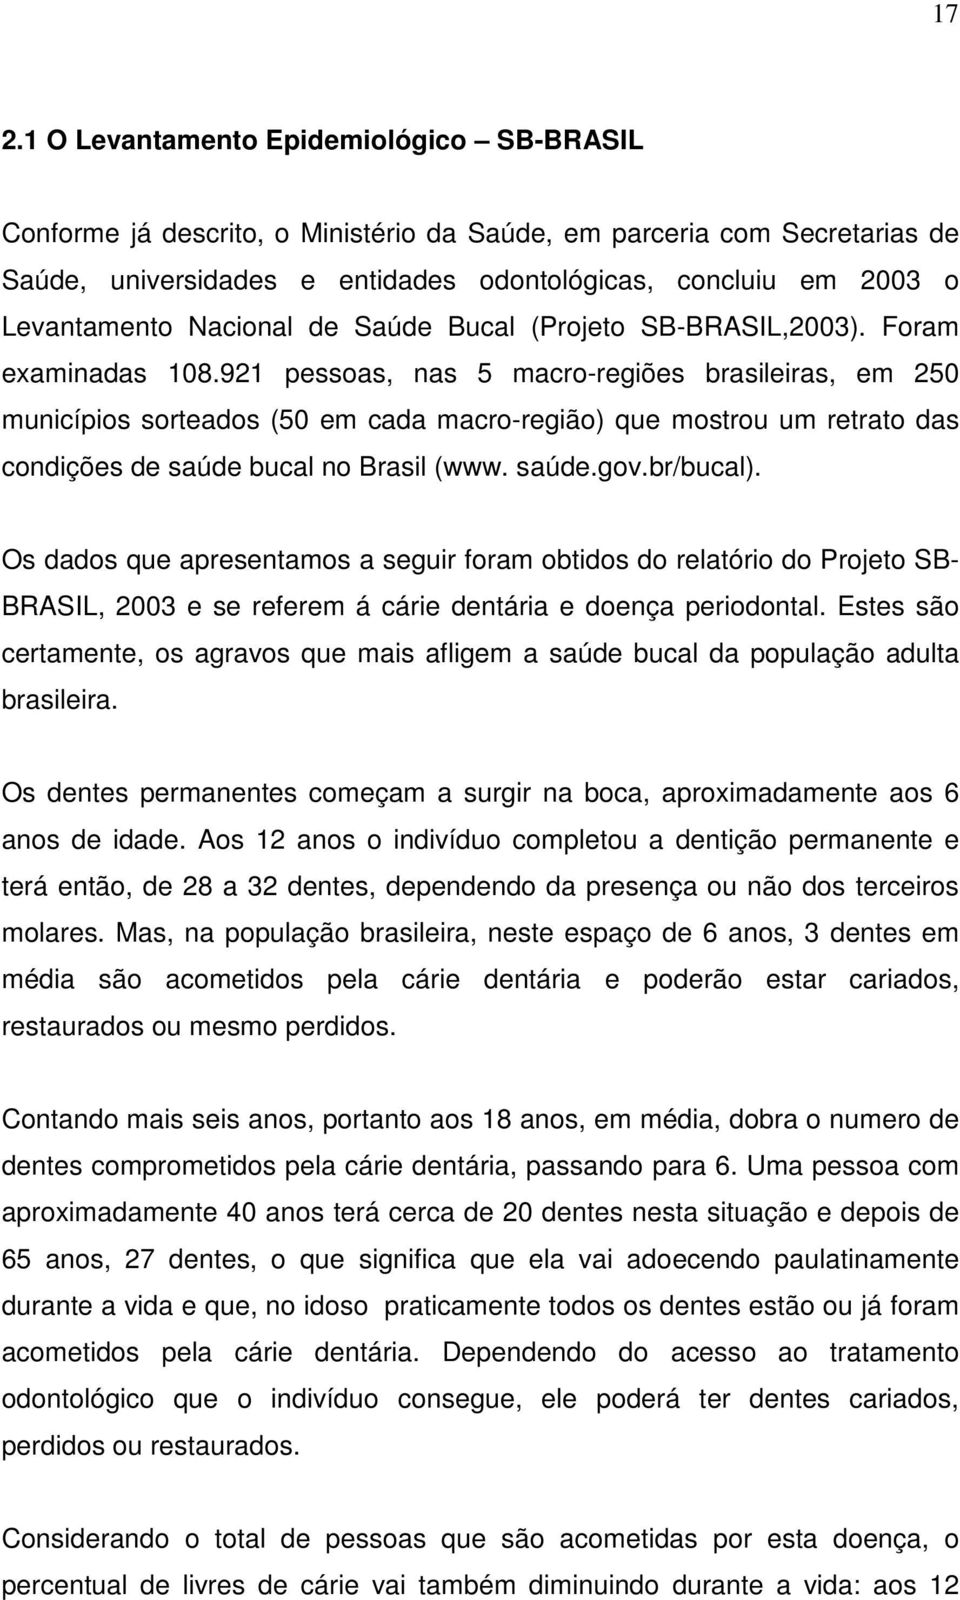 921 pessoas, nas 5 macro-regiões brasileiras, em 250 municípios sorteados (50 em cada macro-região) que mostrou um retrato das condições de saúde bucal no Brasil (www. saúde.gov.br/bucal).